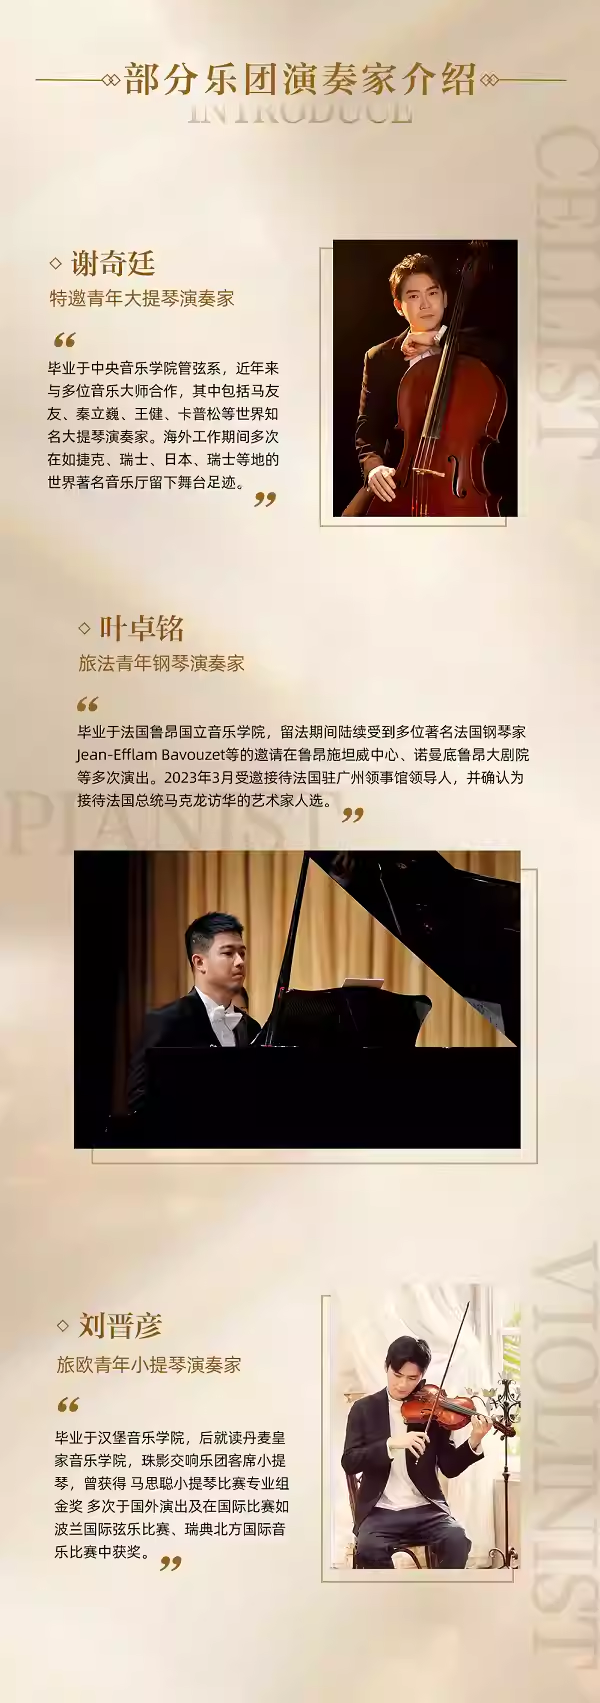 广州《华语经典三十年》界面室内乐团音乐会 - 副本 (3).png